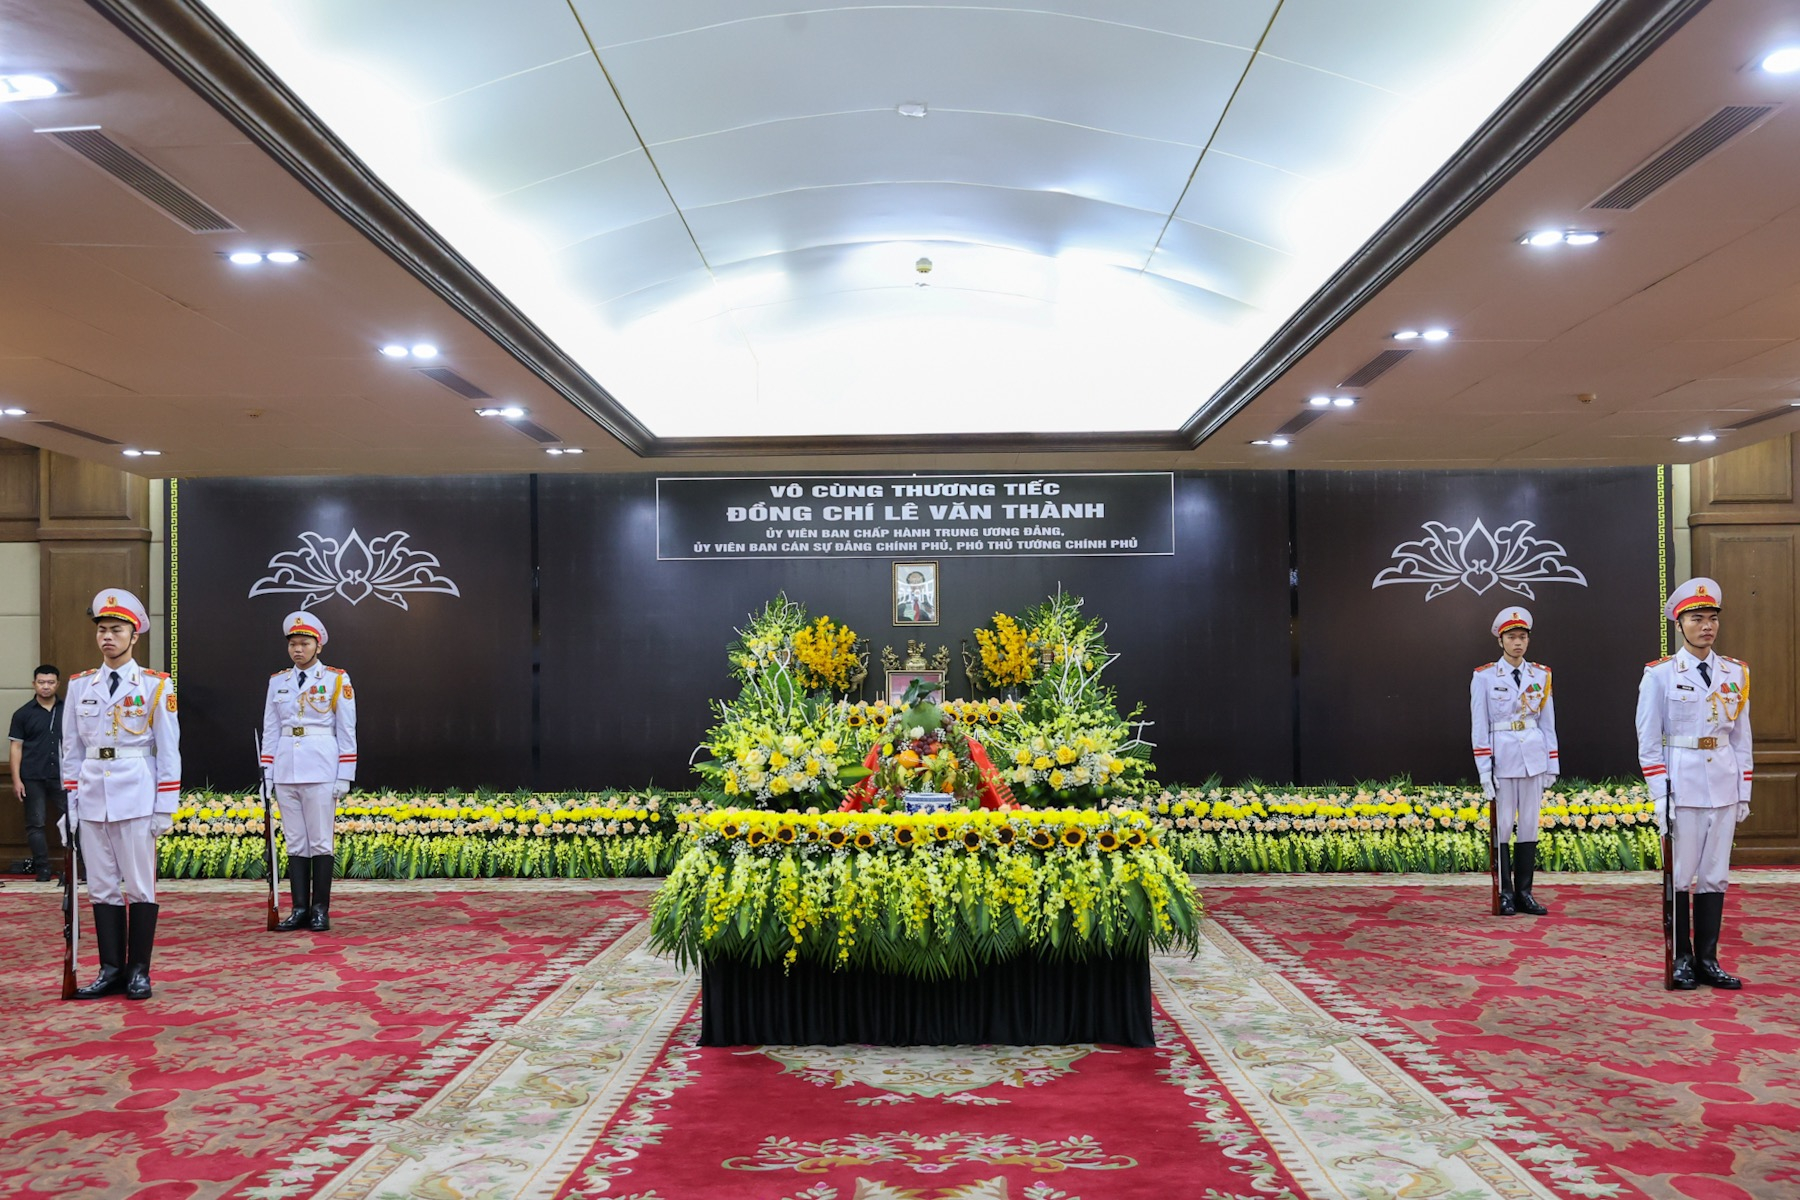 Cử hành trọng thể Lễ tang cố Phó Thủ tướng Lê Văn Thành theo nghi thức Lễ tang cấp Nhà nước. Ảnh: VGP.